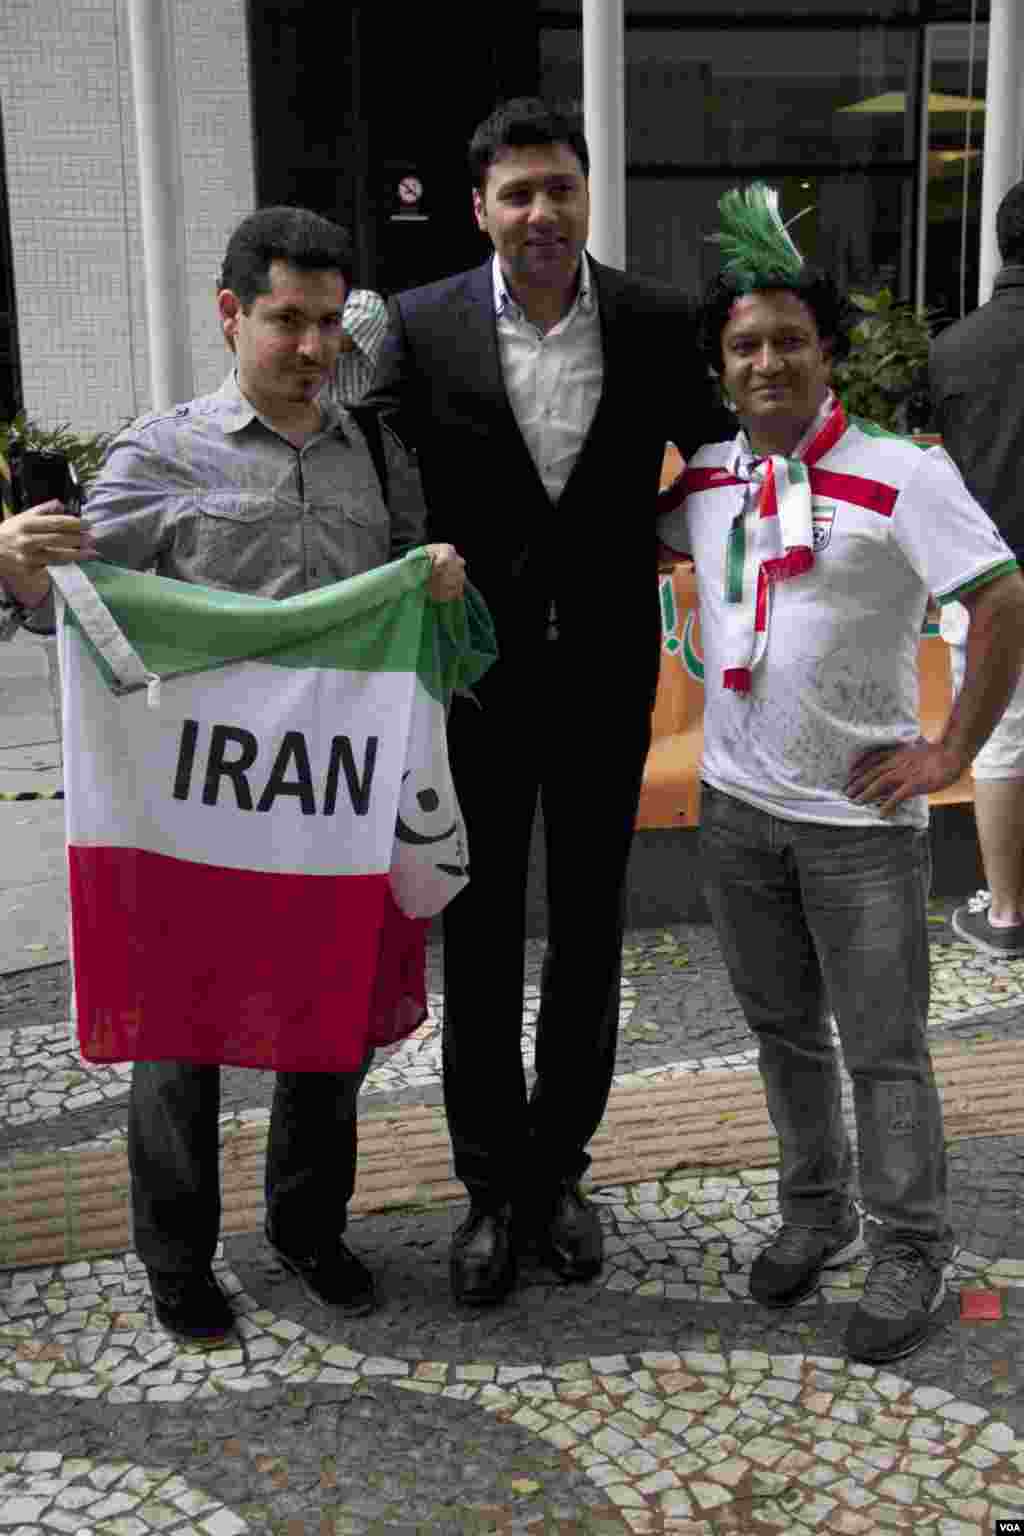 Iranian soccer fan